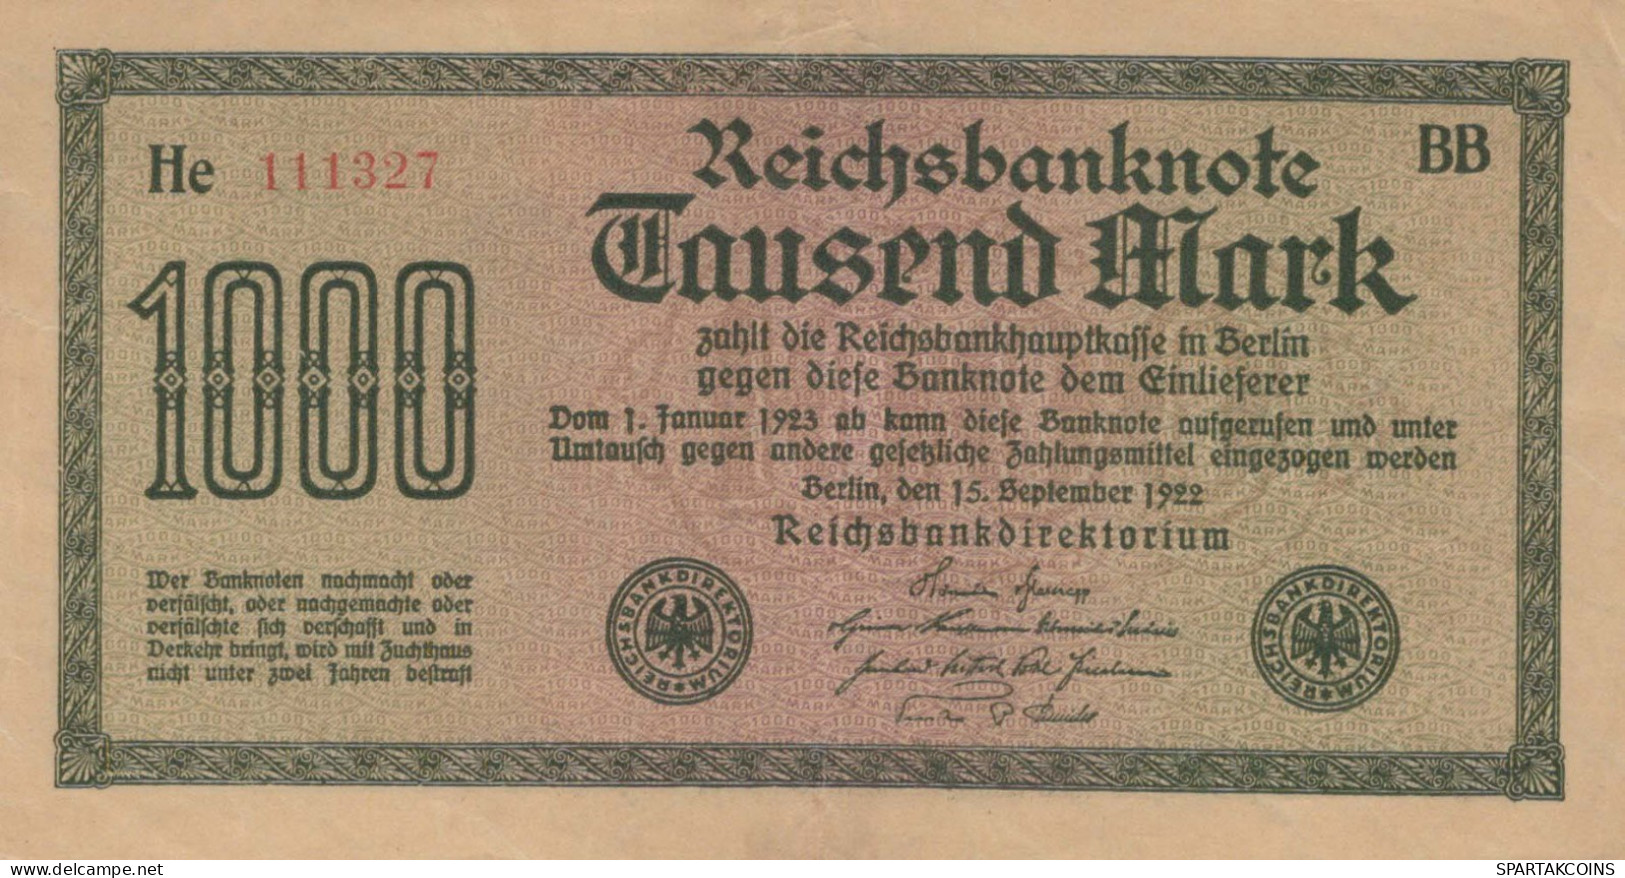 1000 MARK 1922 Stadt BERLIN DEUTSCHLAND Papiergeld Banknote #PL456 - [11] Local Banknote Issues